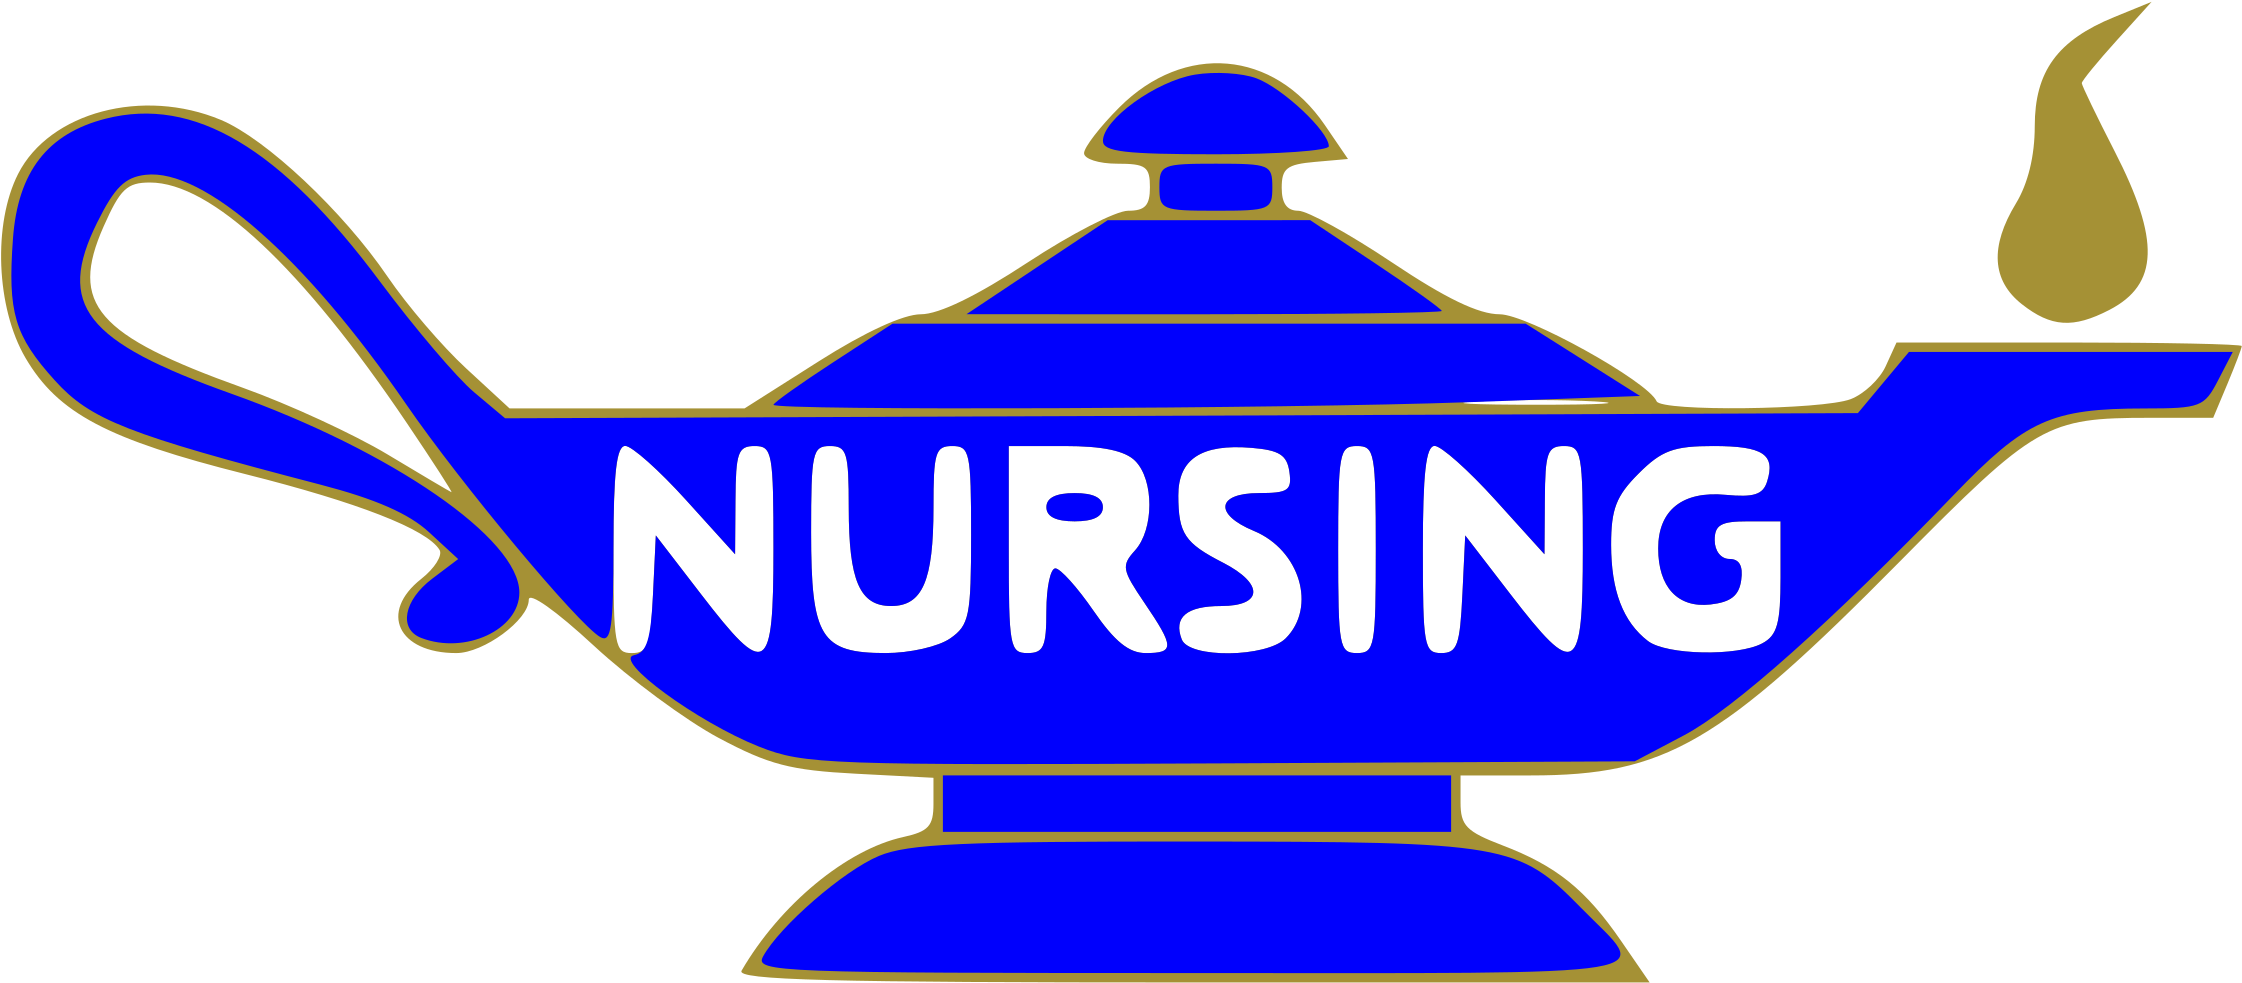 Nursing Lamp - Florence Nightingale Lamp Symbol (2400x1167)